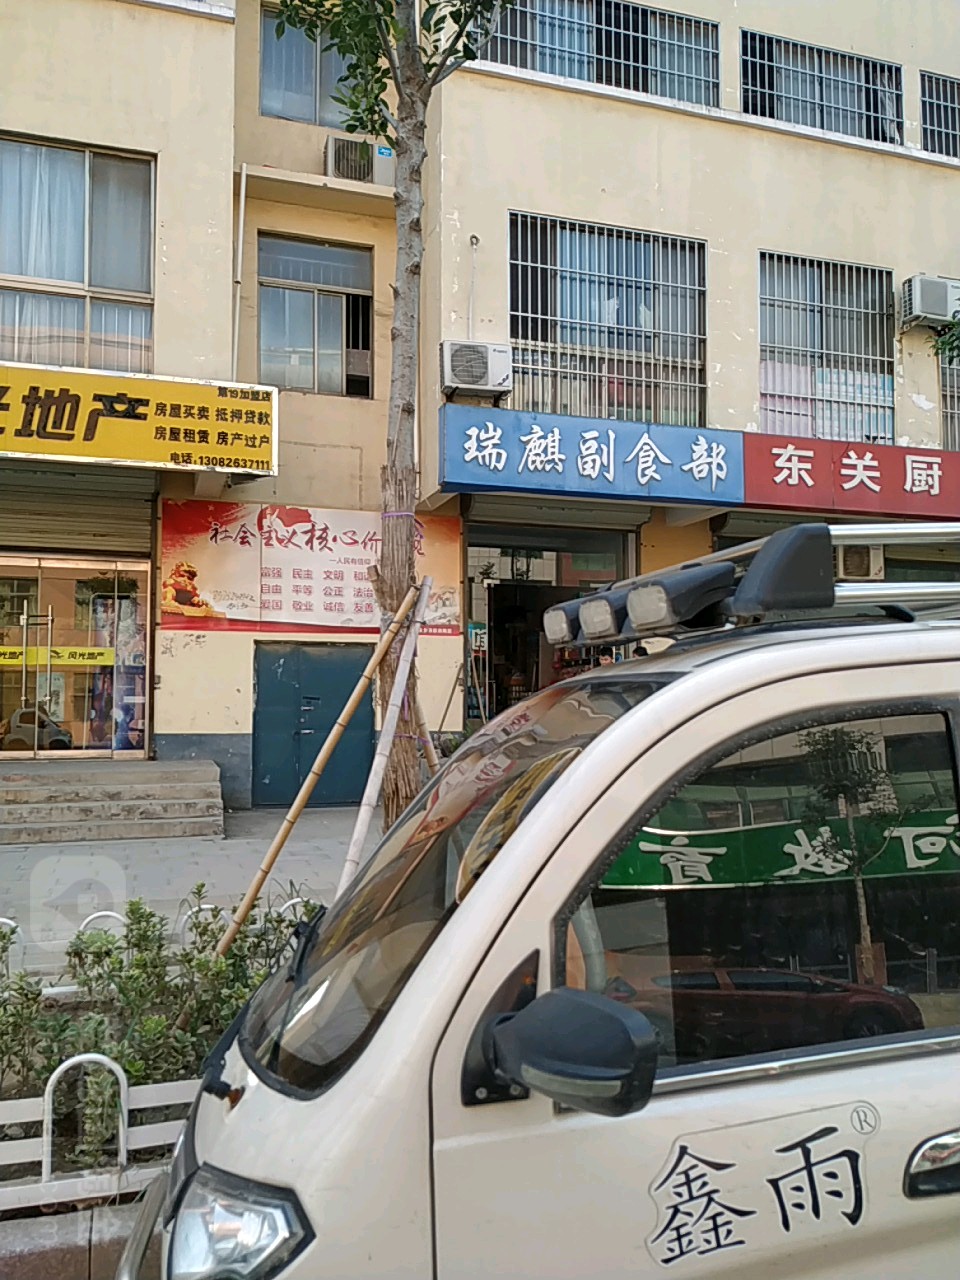 瑞麒副食店